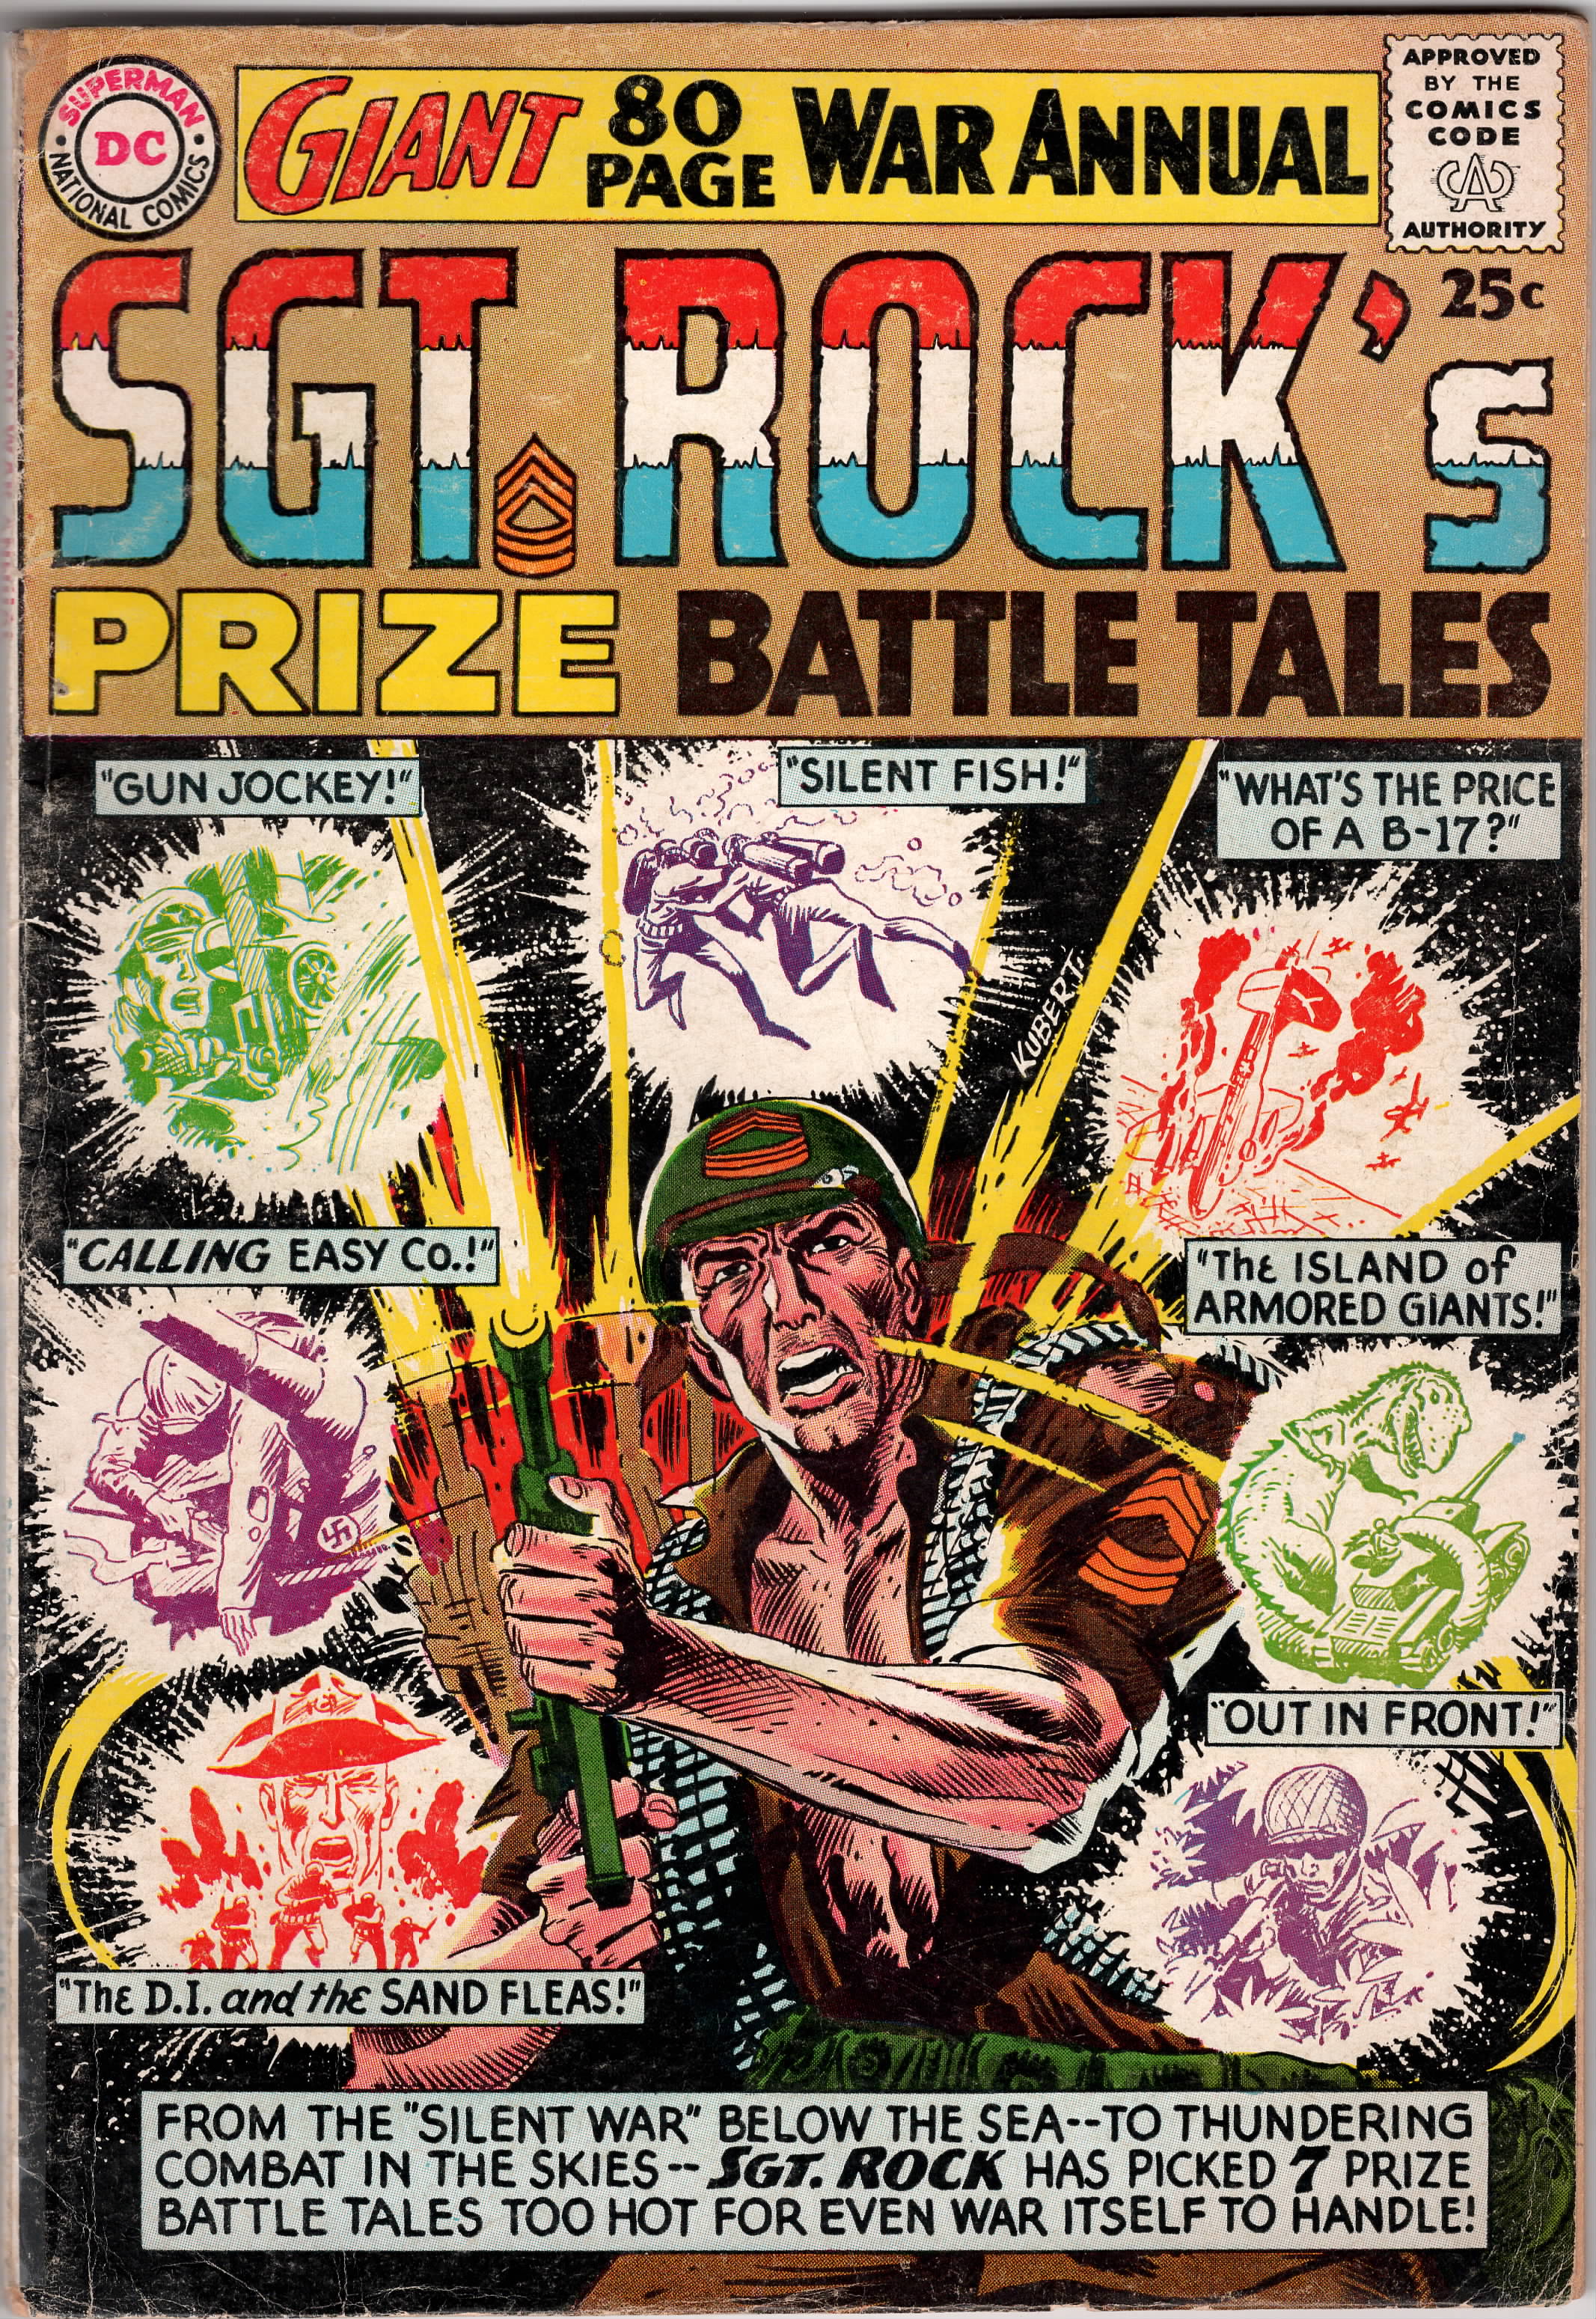 Sgt. Rock's Prize Battle Tales